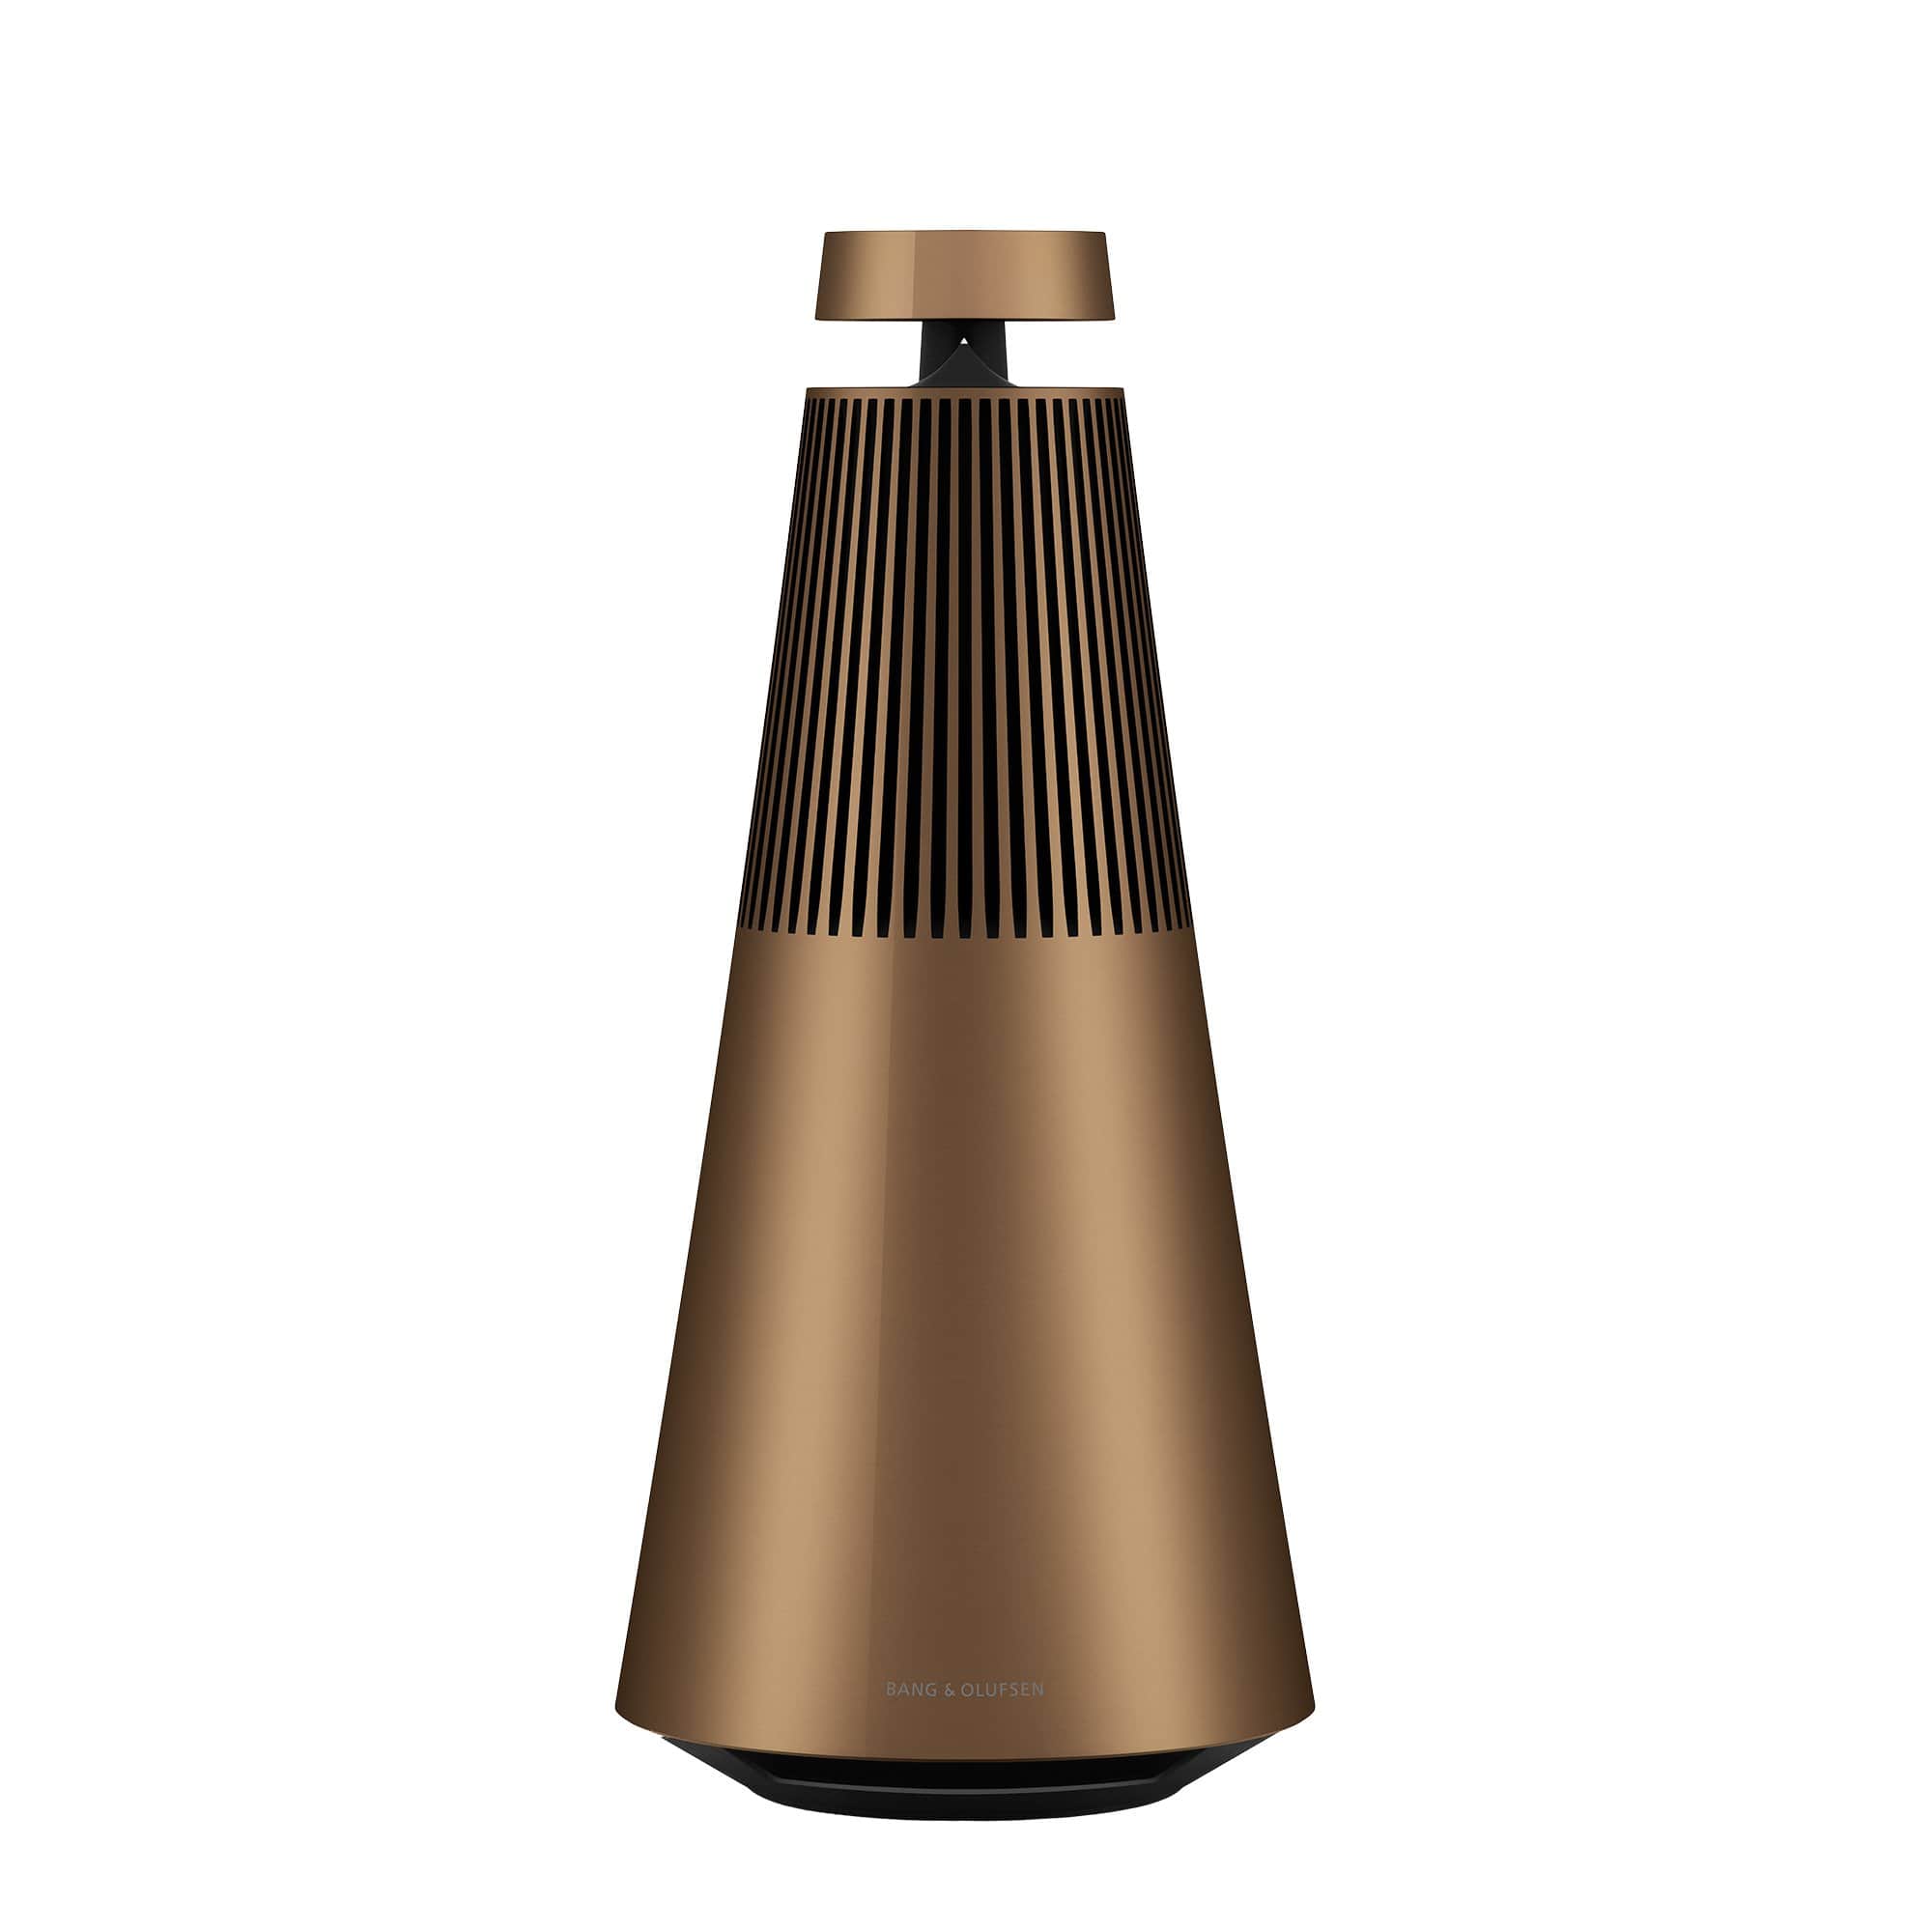 Bronze Beosound 2 Wireless Multiroom Speaker with Voice Assist